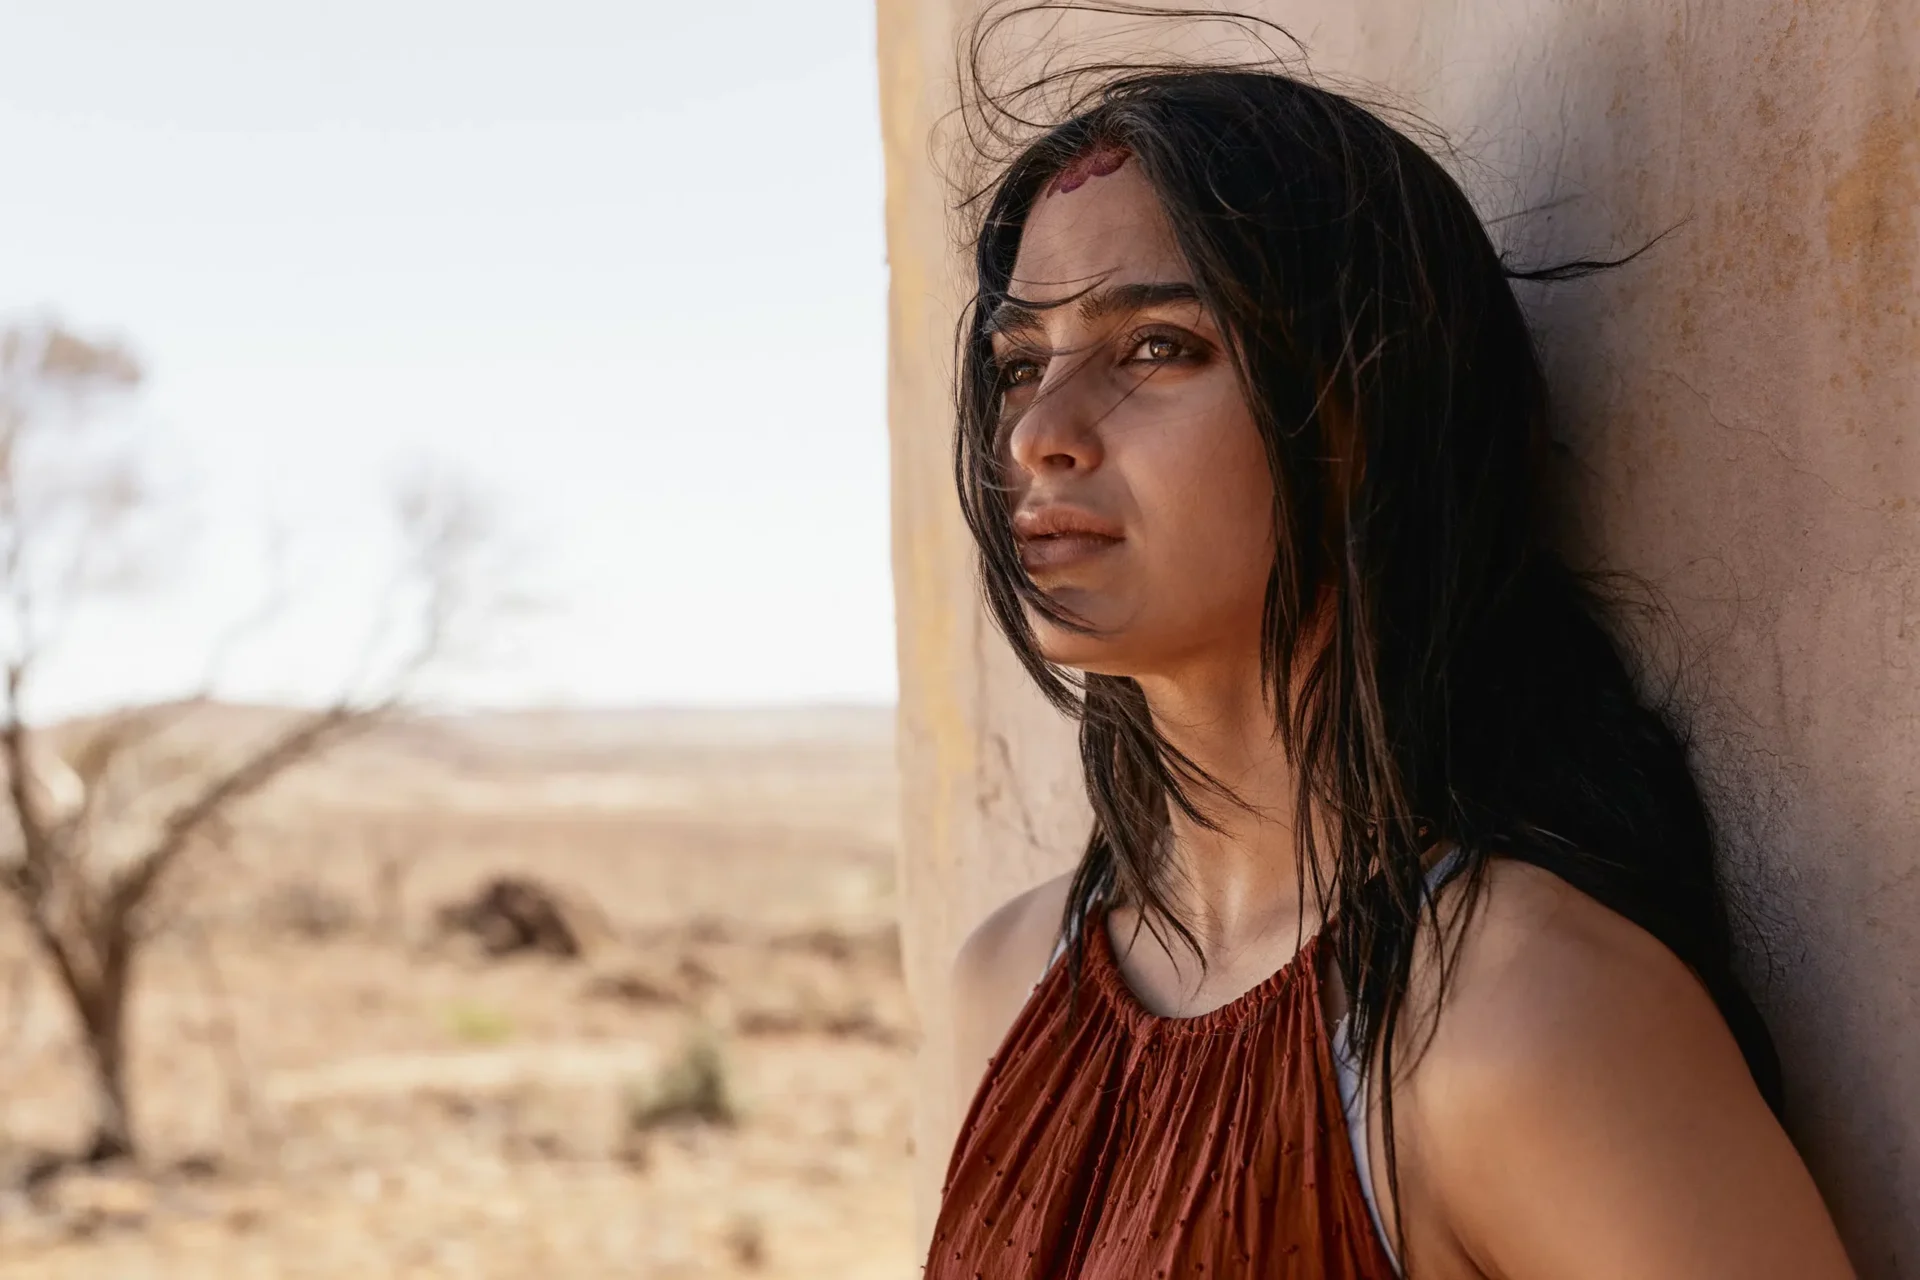 Barrera espera que película ‘Carmen’ muestre el lado humano en la frontera